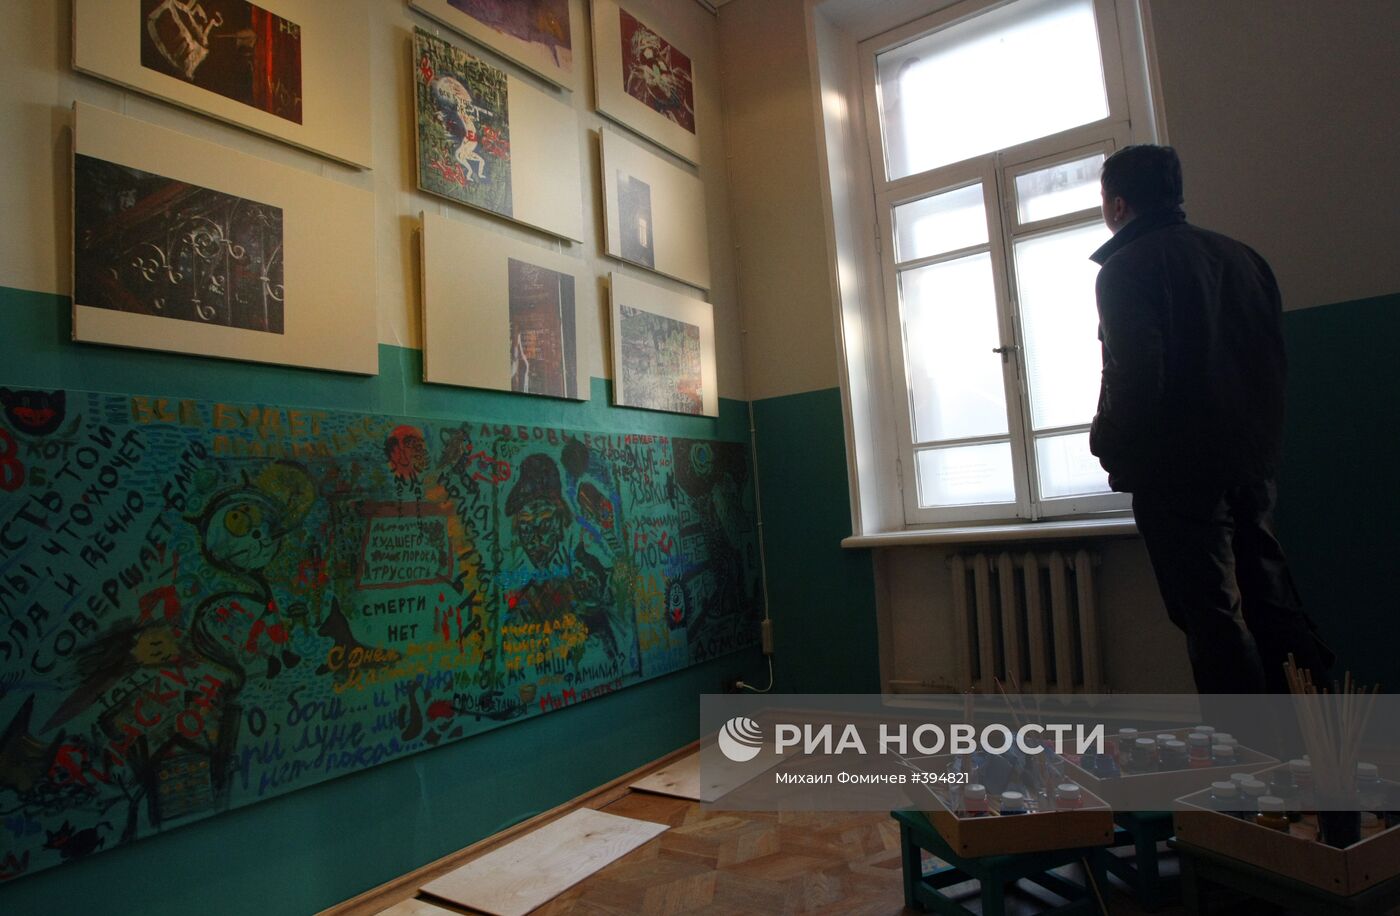 Празднование дня рождения Михаила Булгакова в музее писателя